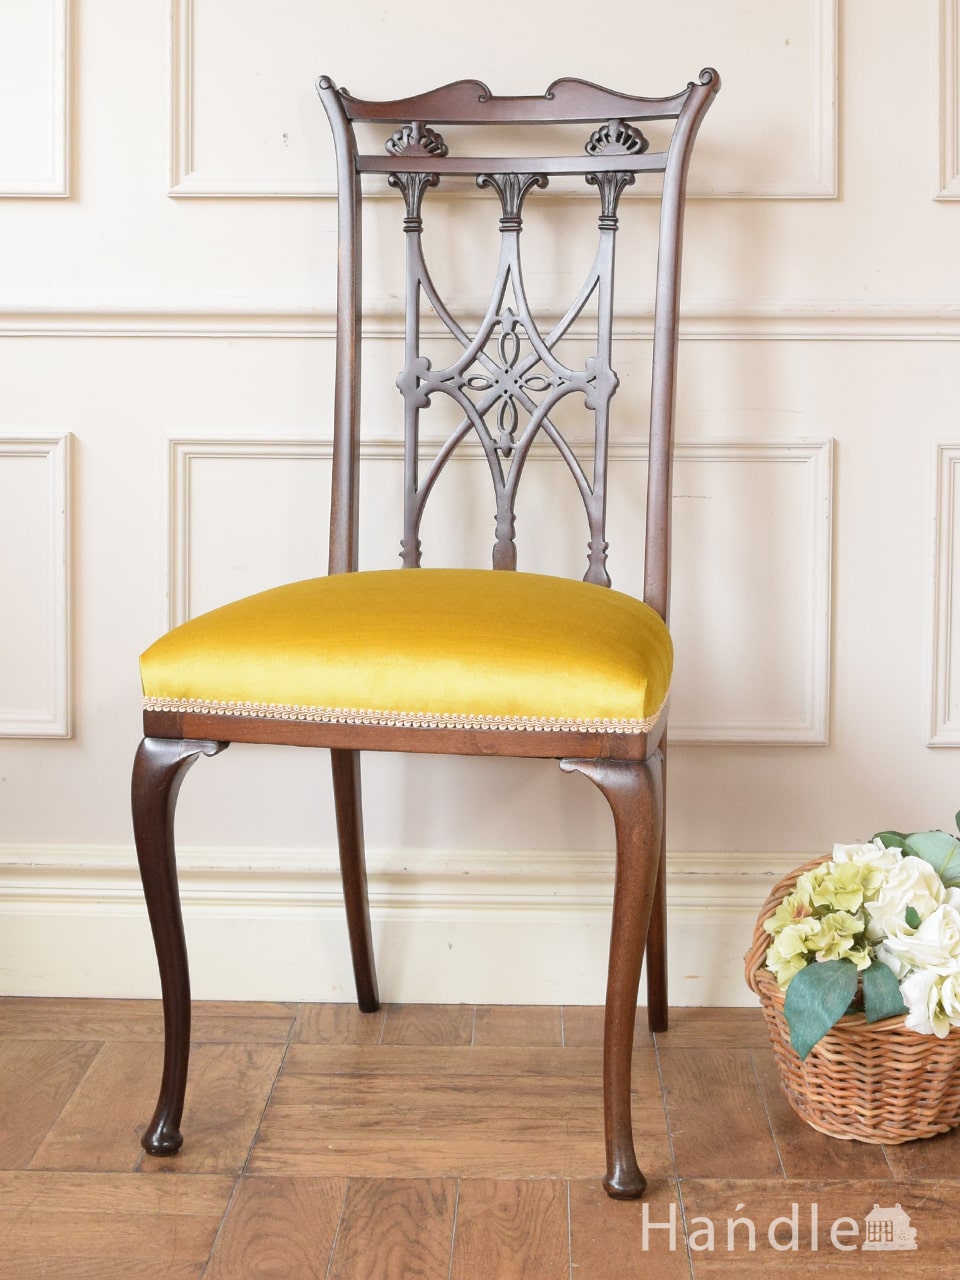 アンティークの美しい椅子、芸術的な美しさのマホガニー材のサロンチェア (q-429-c)